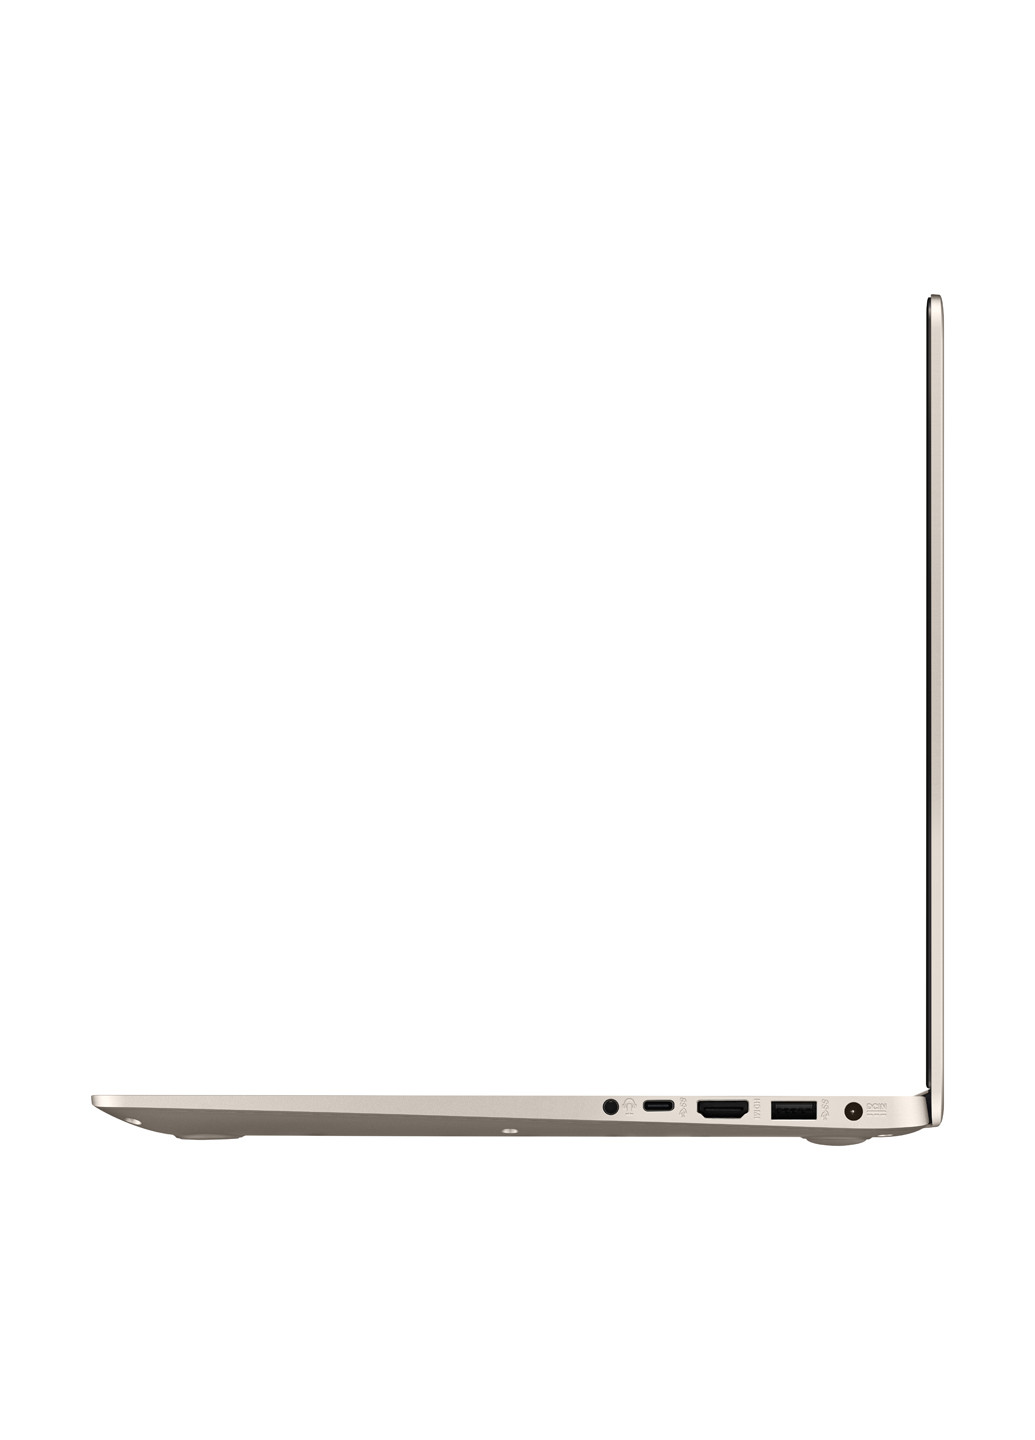 Ноутбук Asus vivobook s15 s510un-bq389t (90nb0gs1-m07030) gold (136402515)